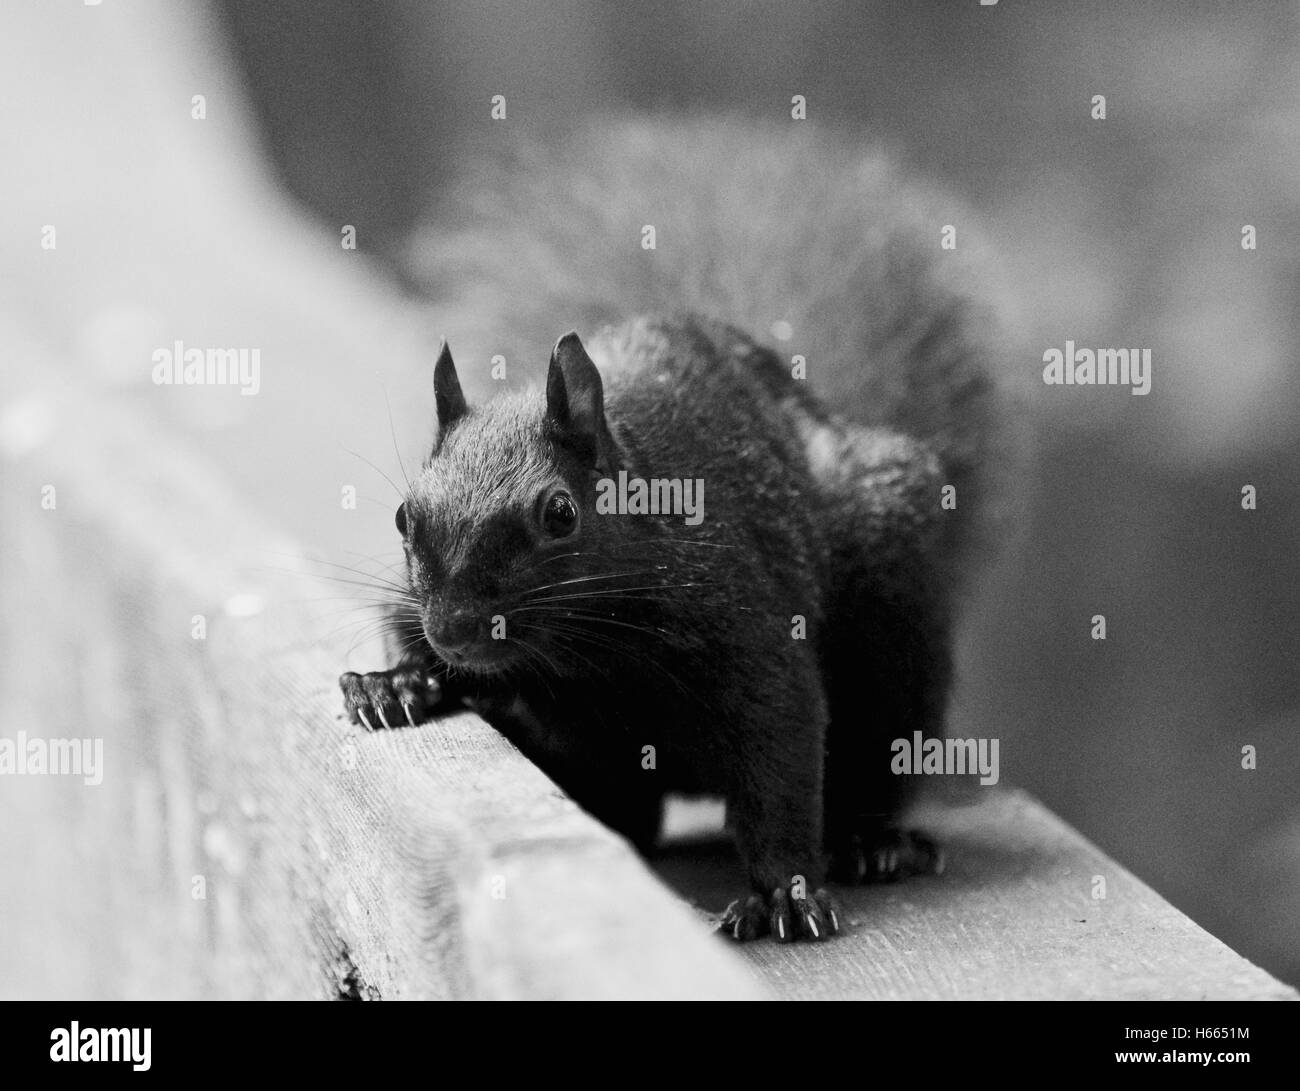 Schöne schwarz / weiß Bild mit einem niedlichen lustige Eichhörnchen auf der Suche nach etwas Stockfoto